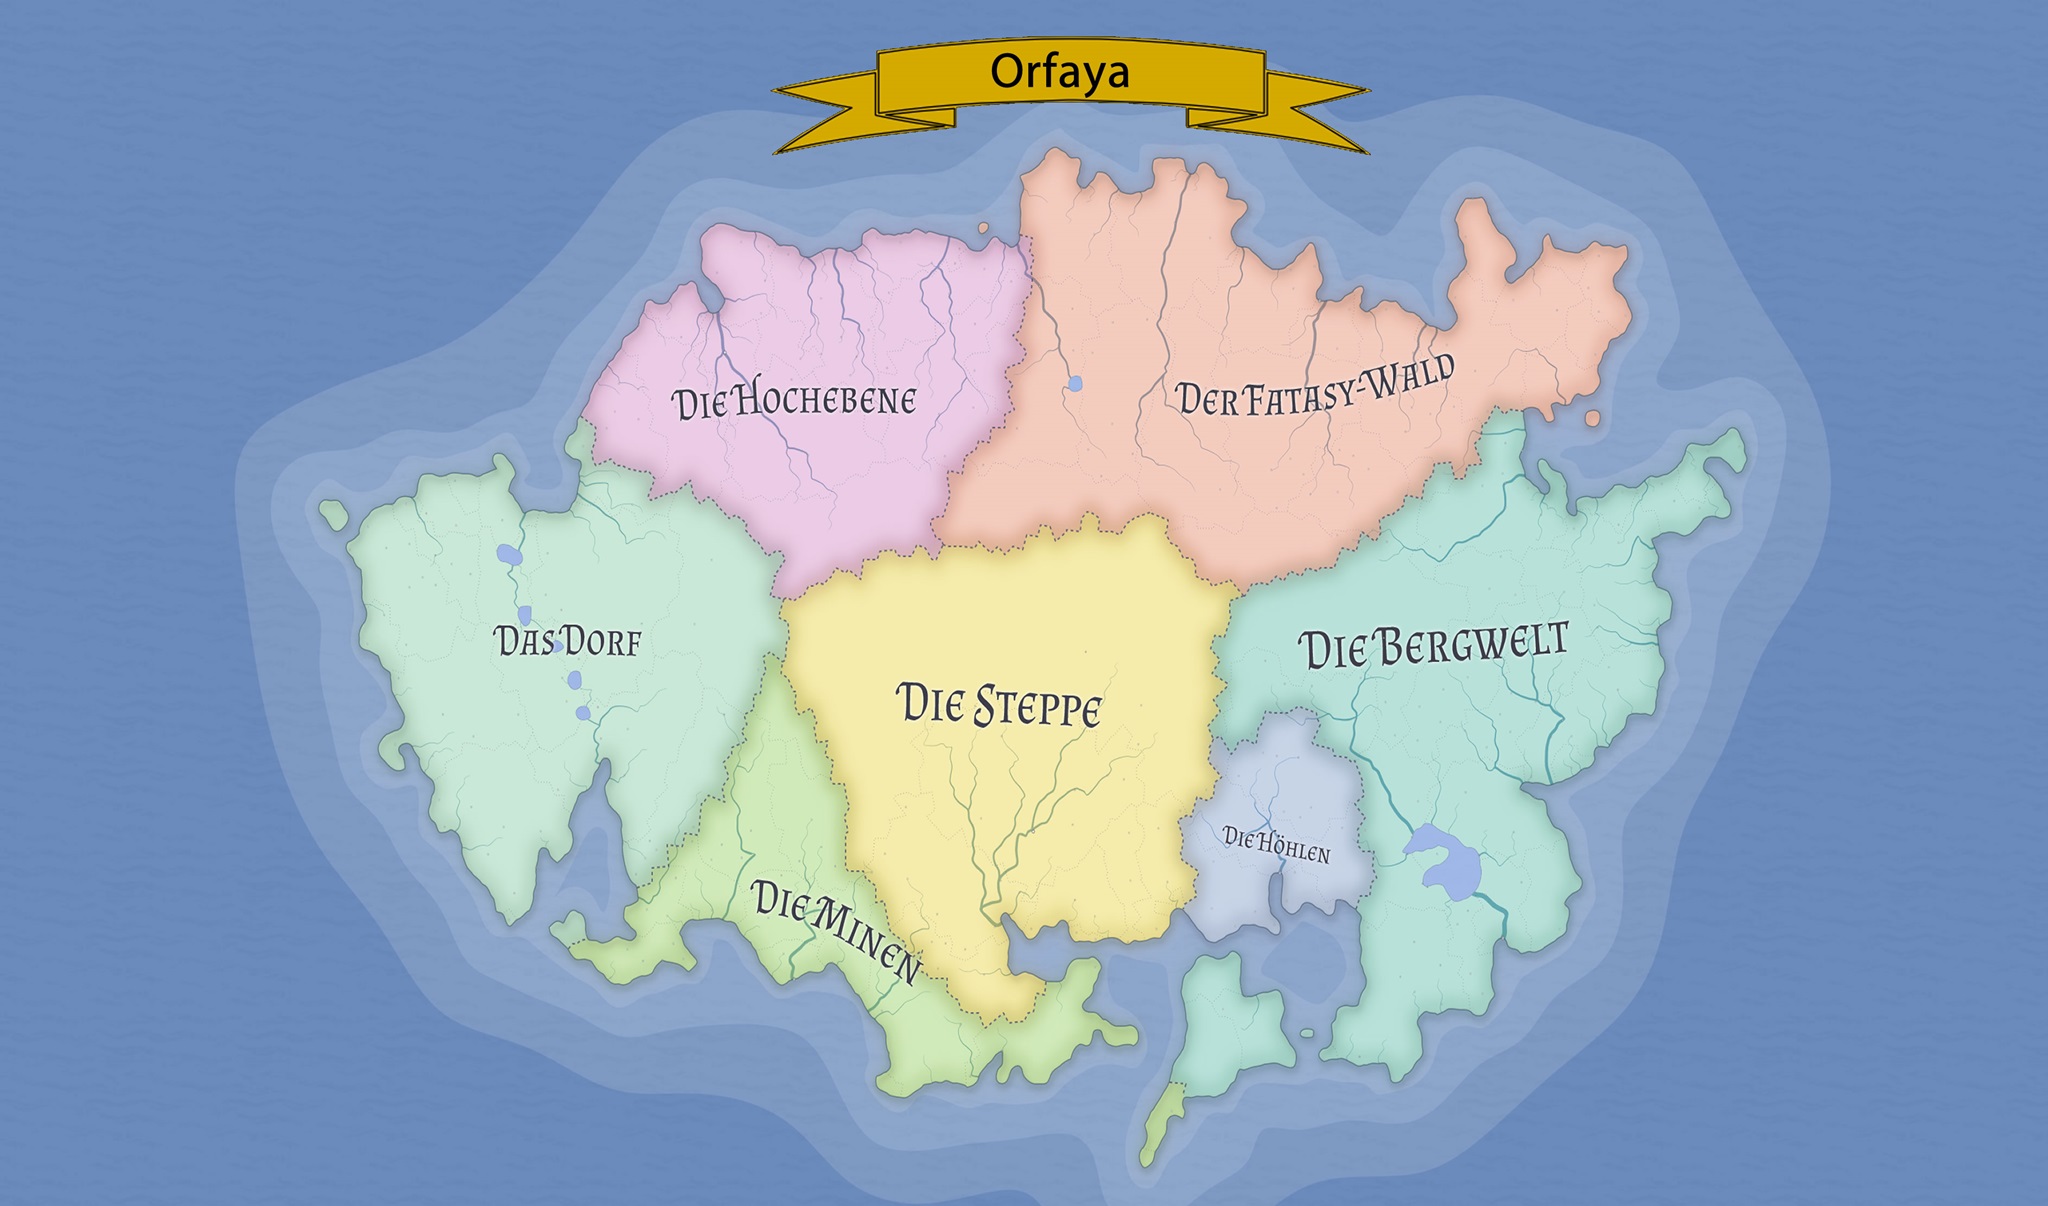 orfaya_map-large.jpg